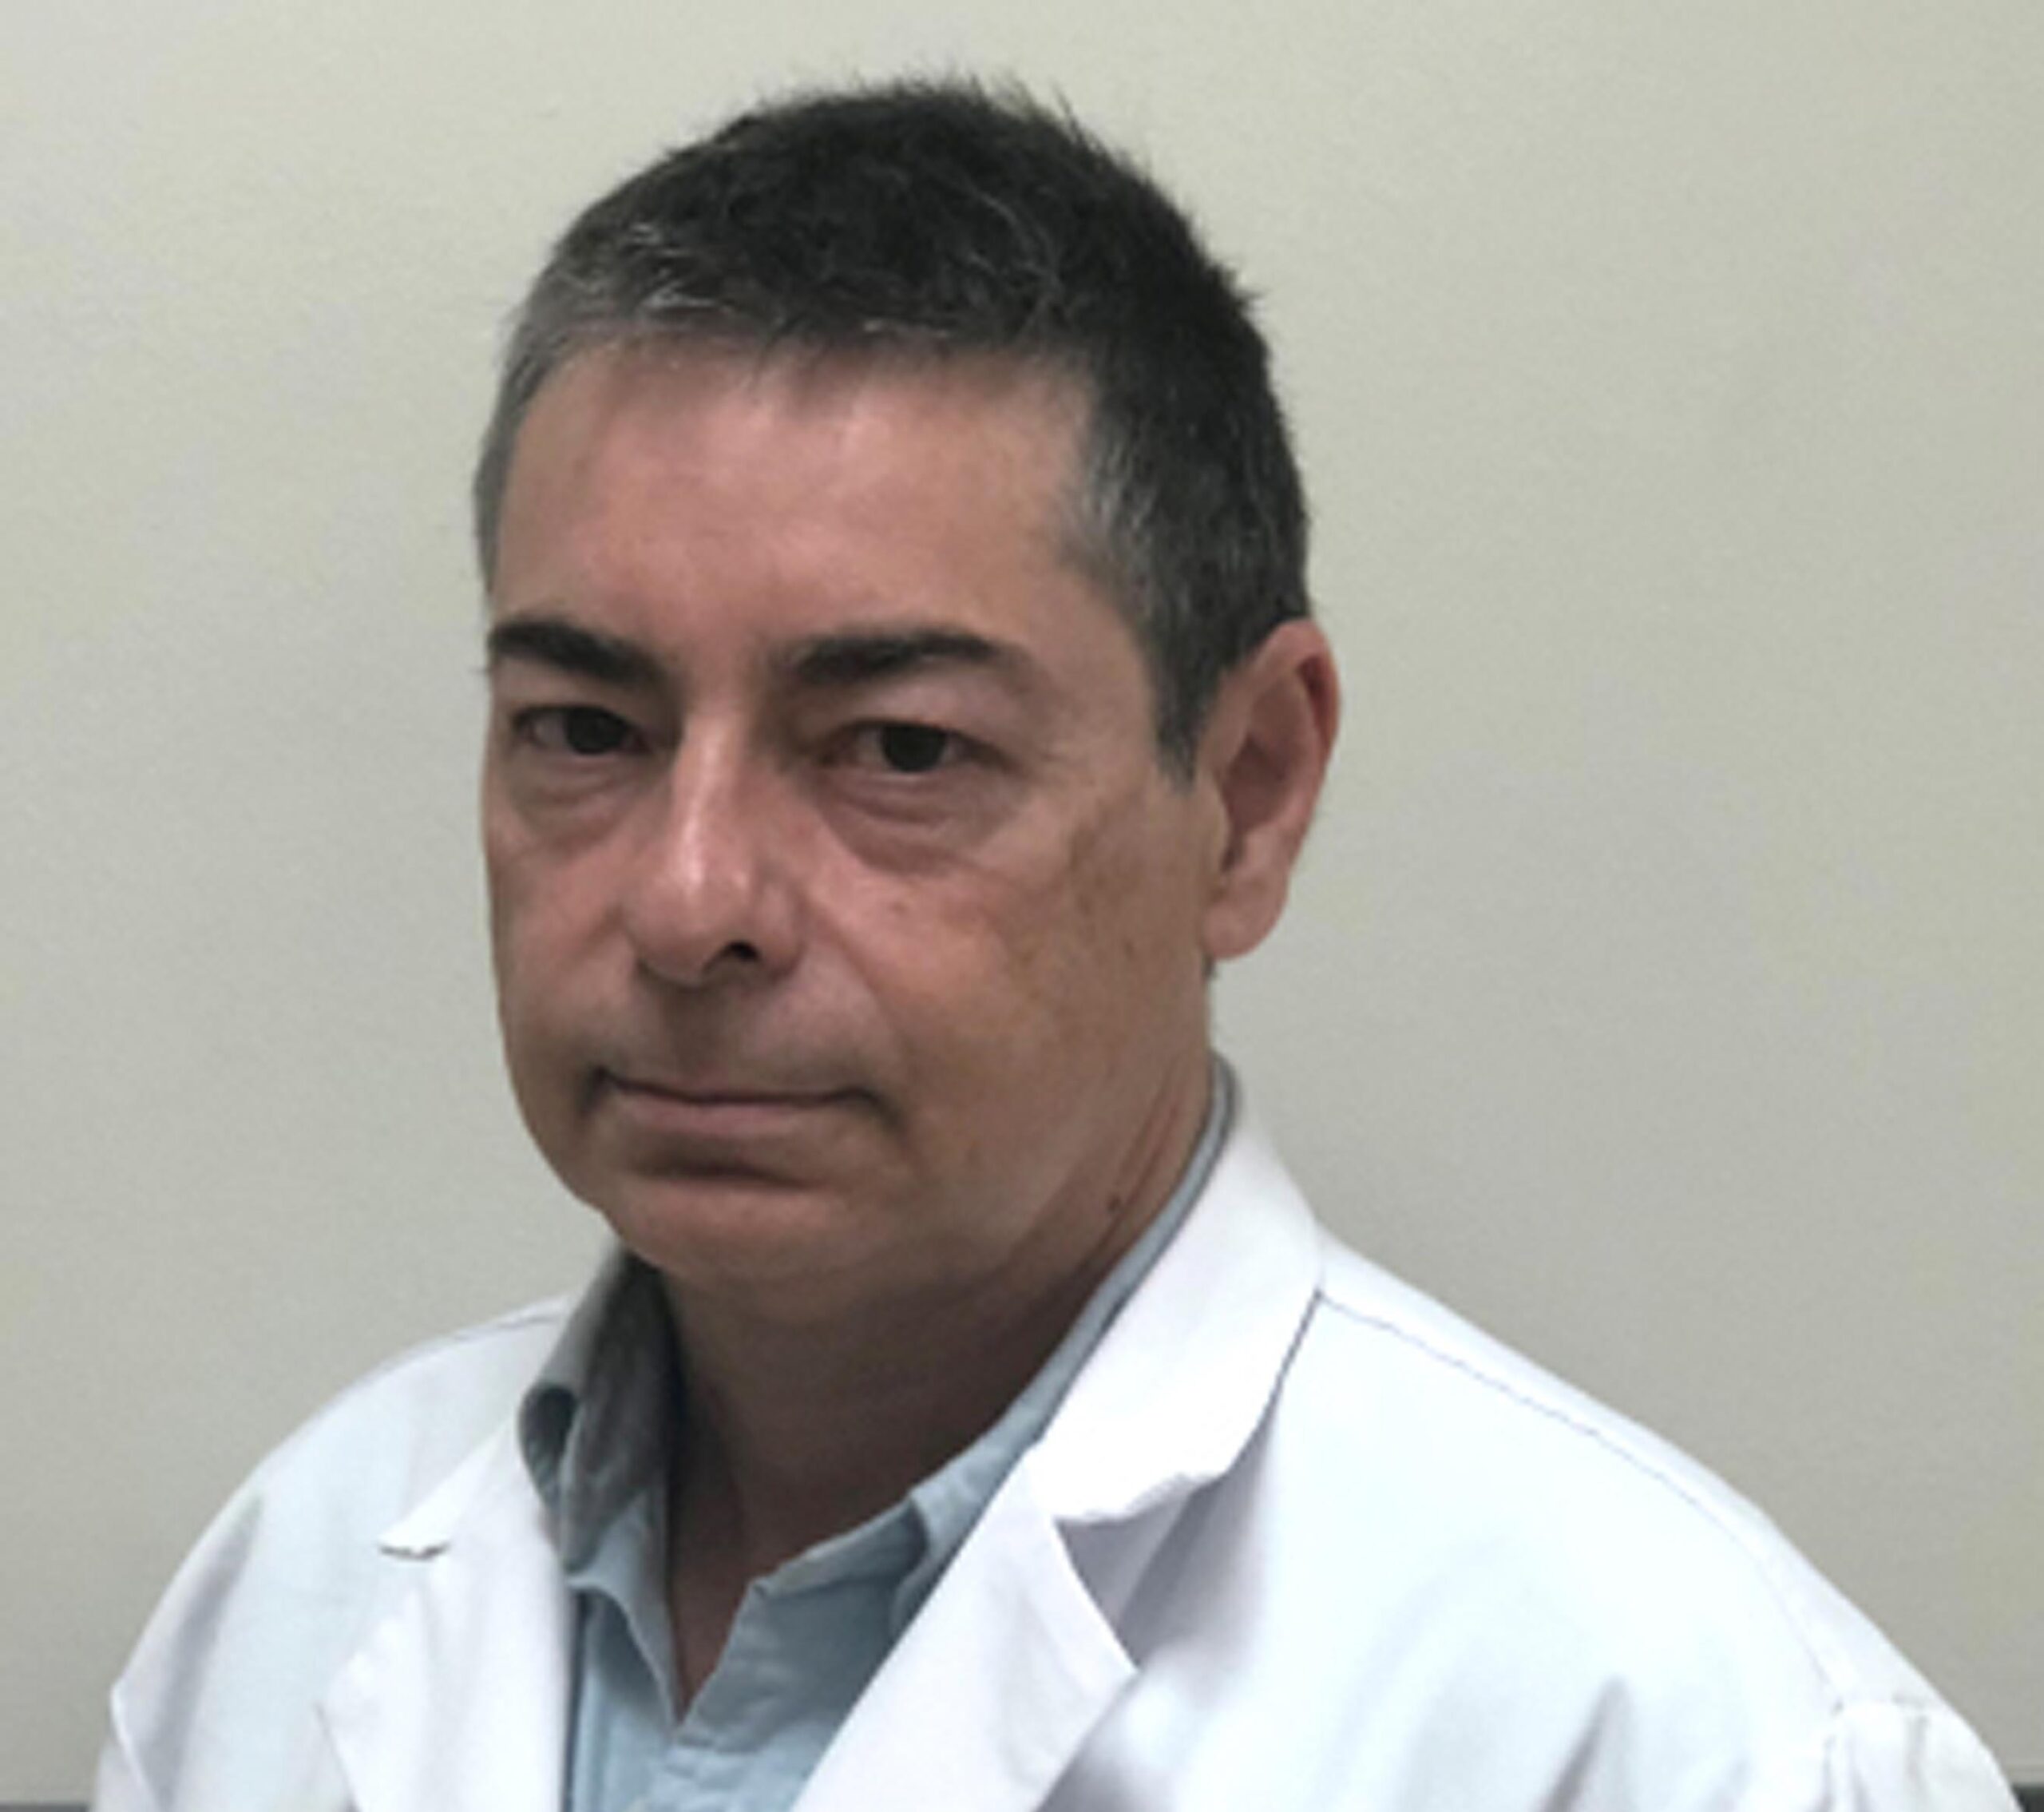 Dr. José Luis Garrido Pereiro